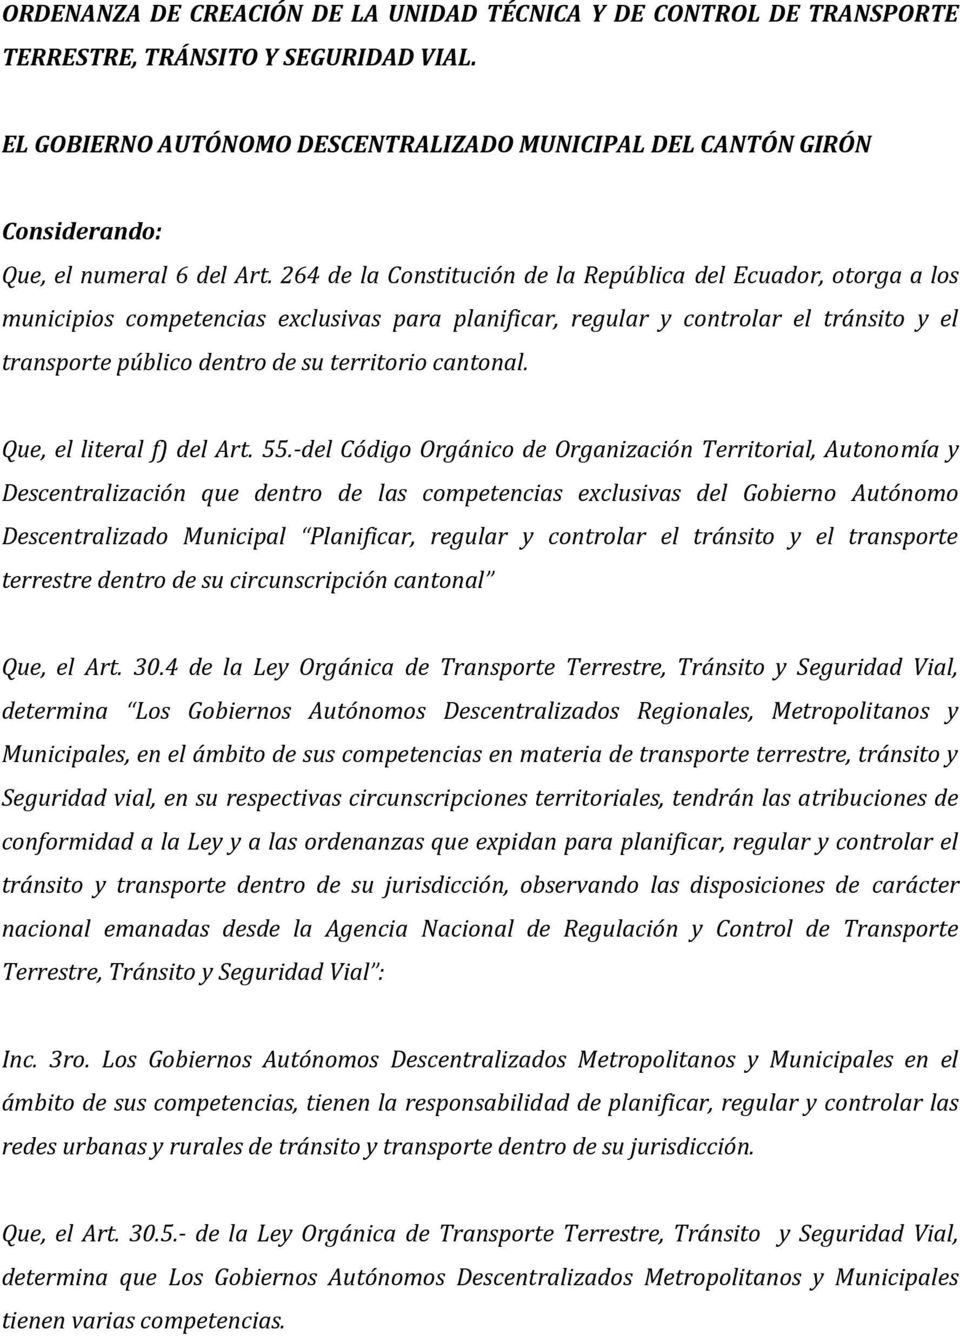 264 de la Constitución de la República del Ecuador, otorga a los municipios competencias exclusivas para planificar, regular y controlar el tránsito y el transporte público dentro de su territorio